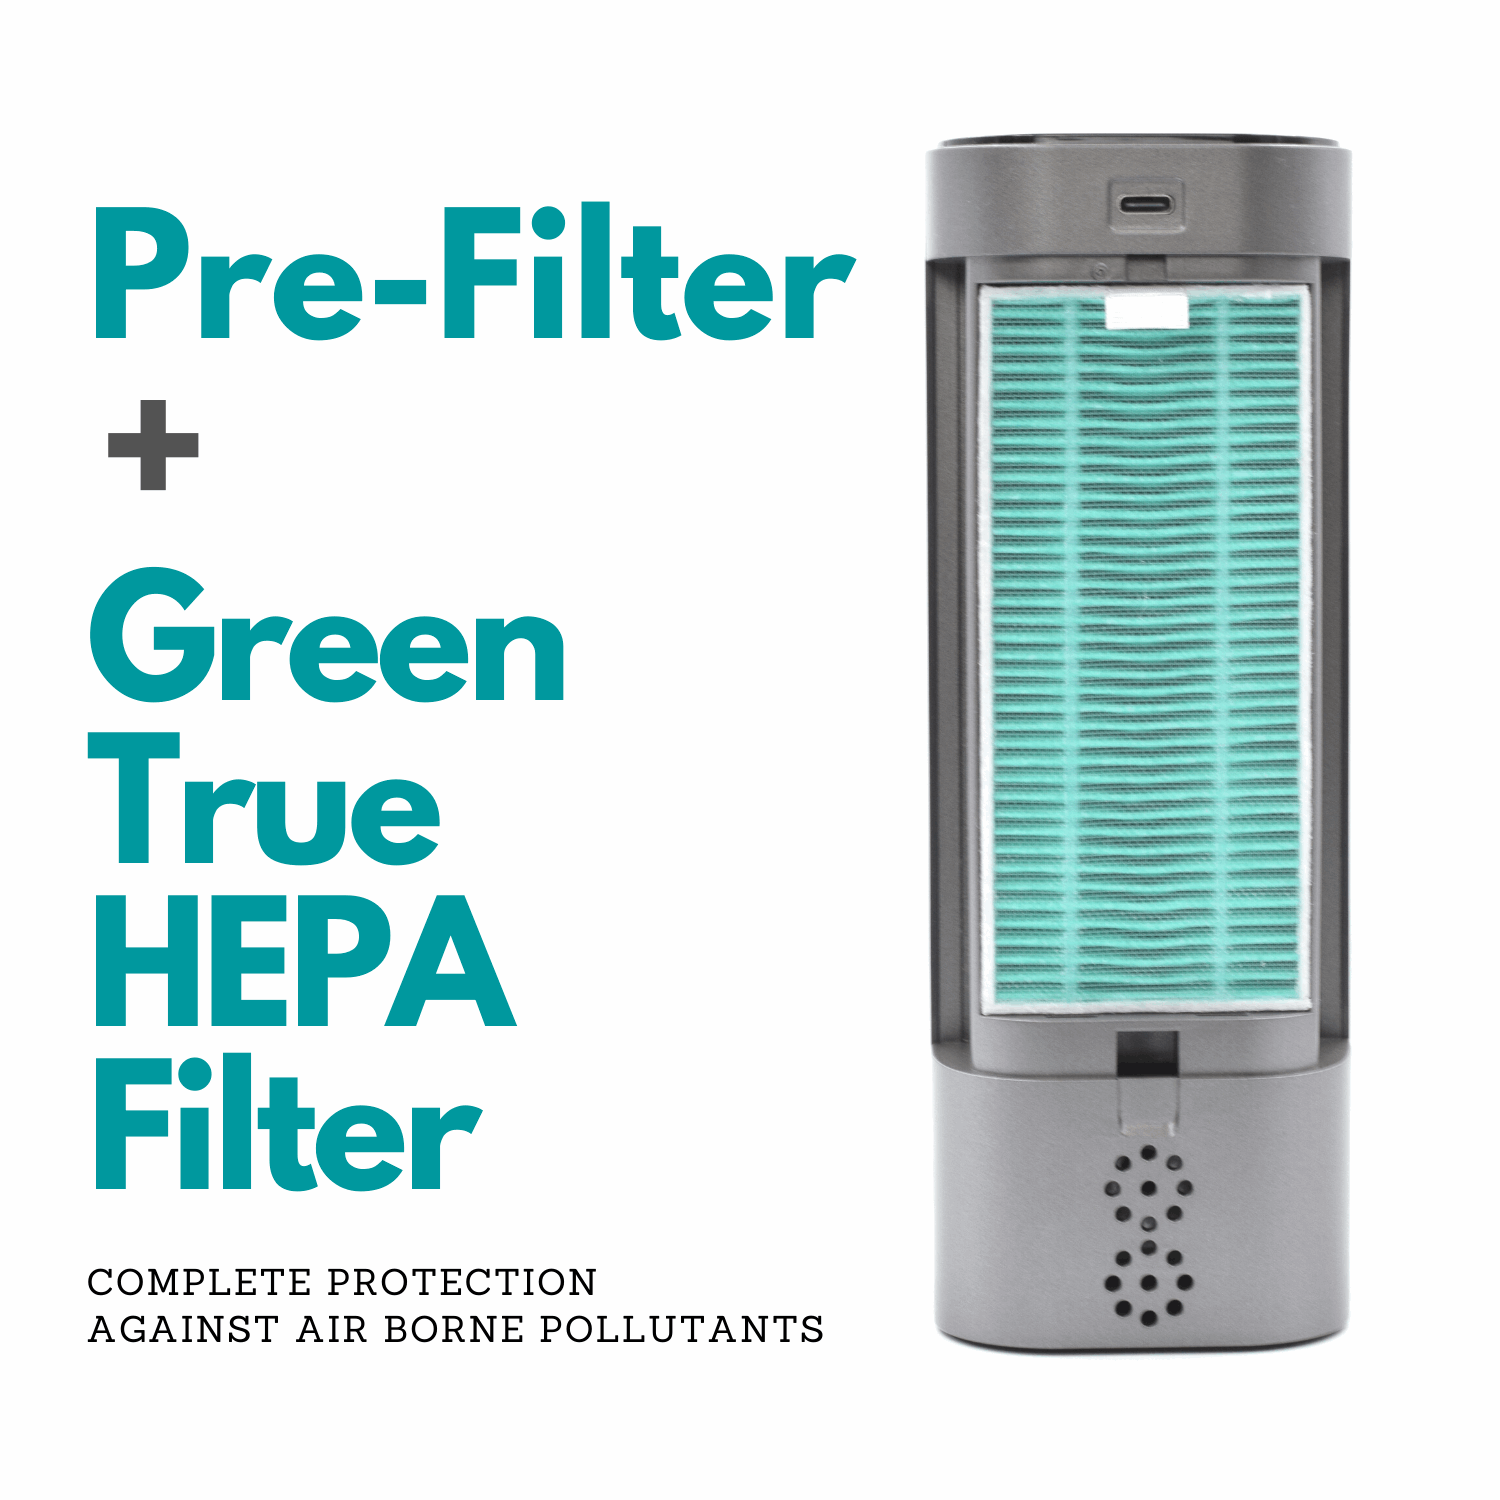 Reffair AX60 Replacement Filter | Green True HEPA Filter for Better Air Purification